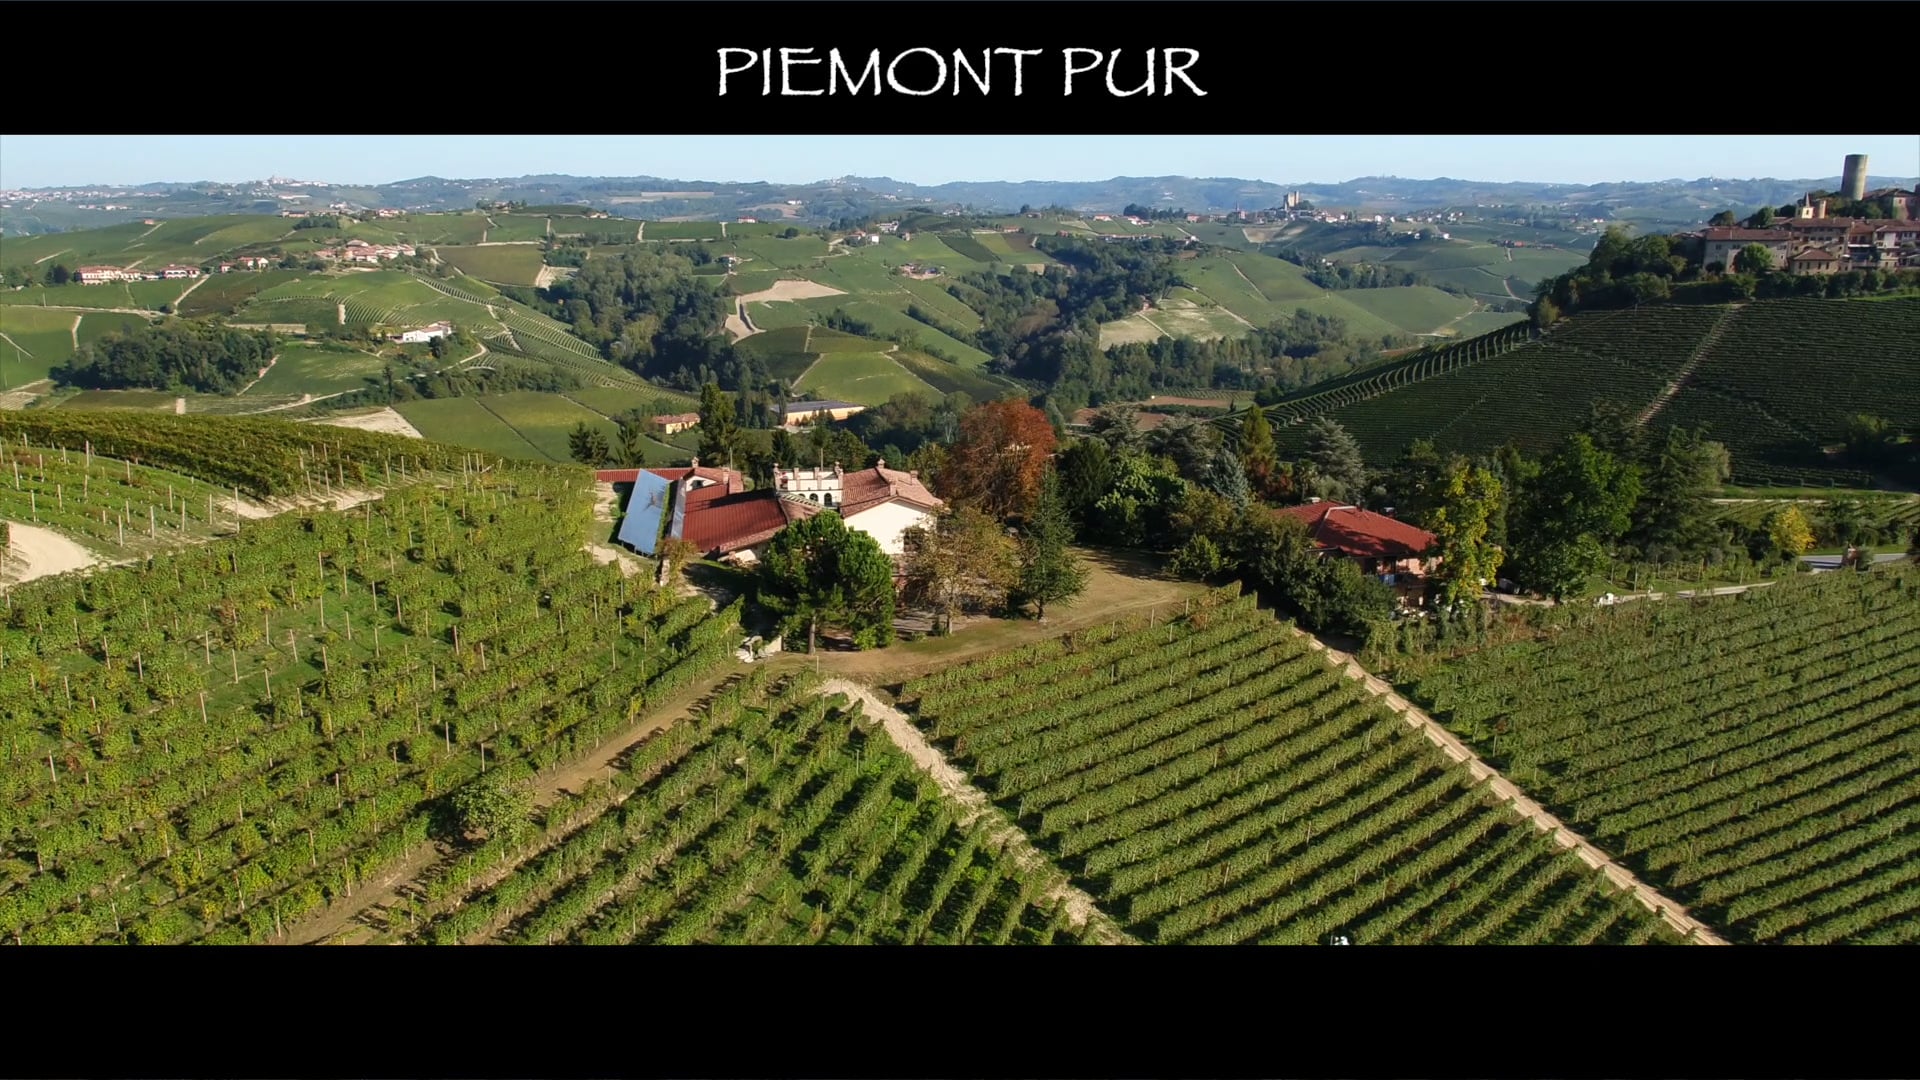 Piemont Pur | Visita in cantina